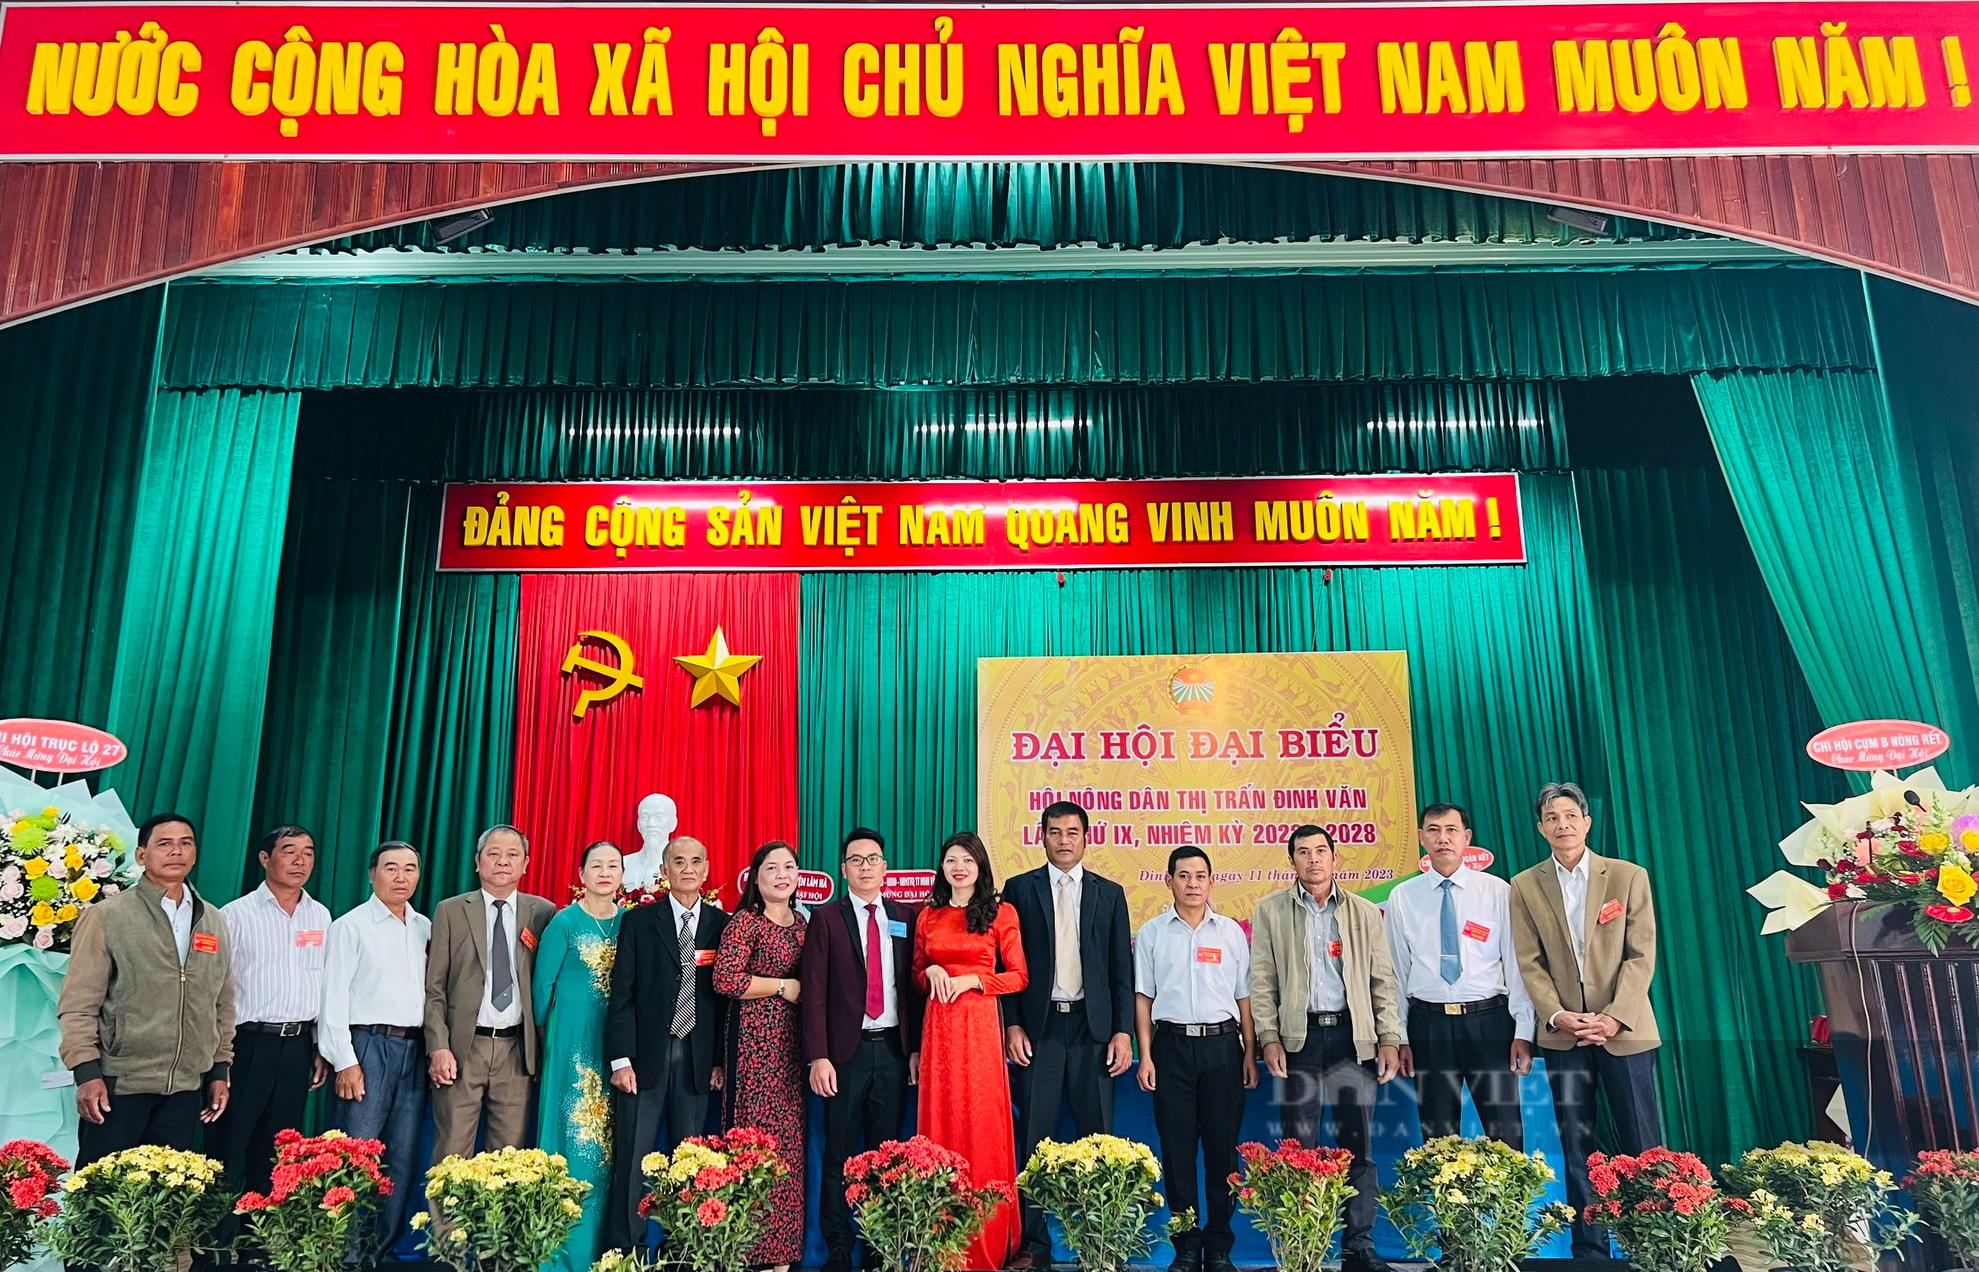 Huyện đầu tiên của tỉnh Lâm Đồng tổ chức Đại hội đại biểu Hội Nông dân, nữ chủ tịch tái đắc cử - Ảnh 3.